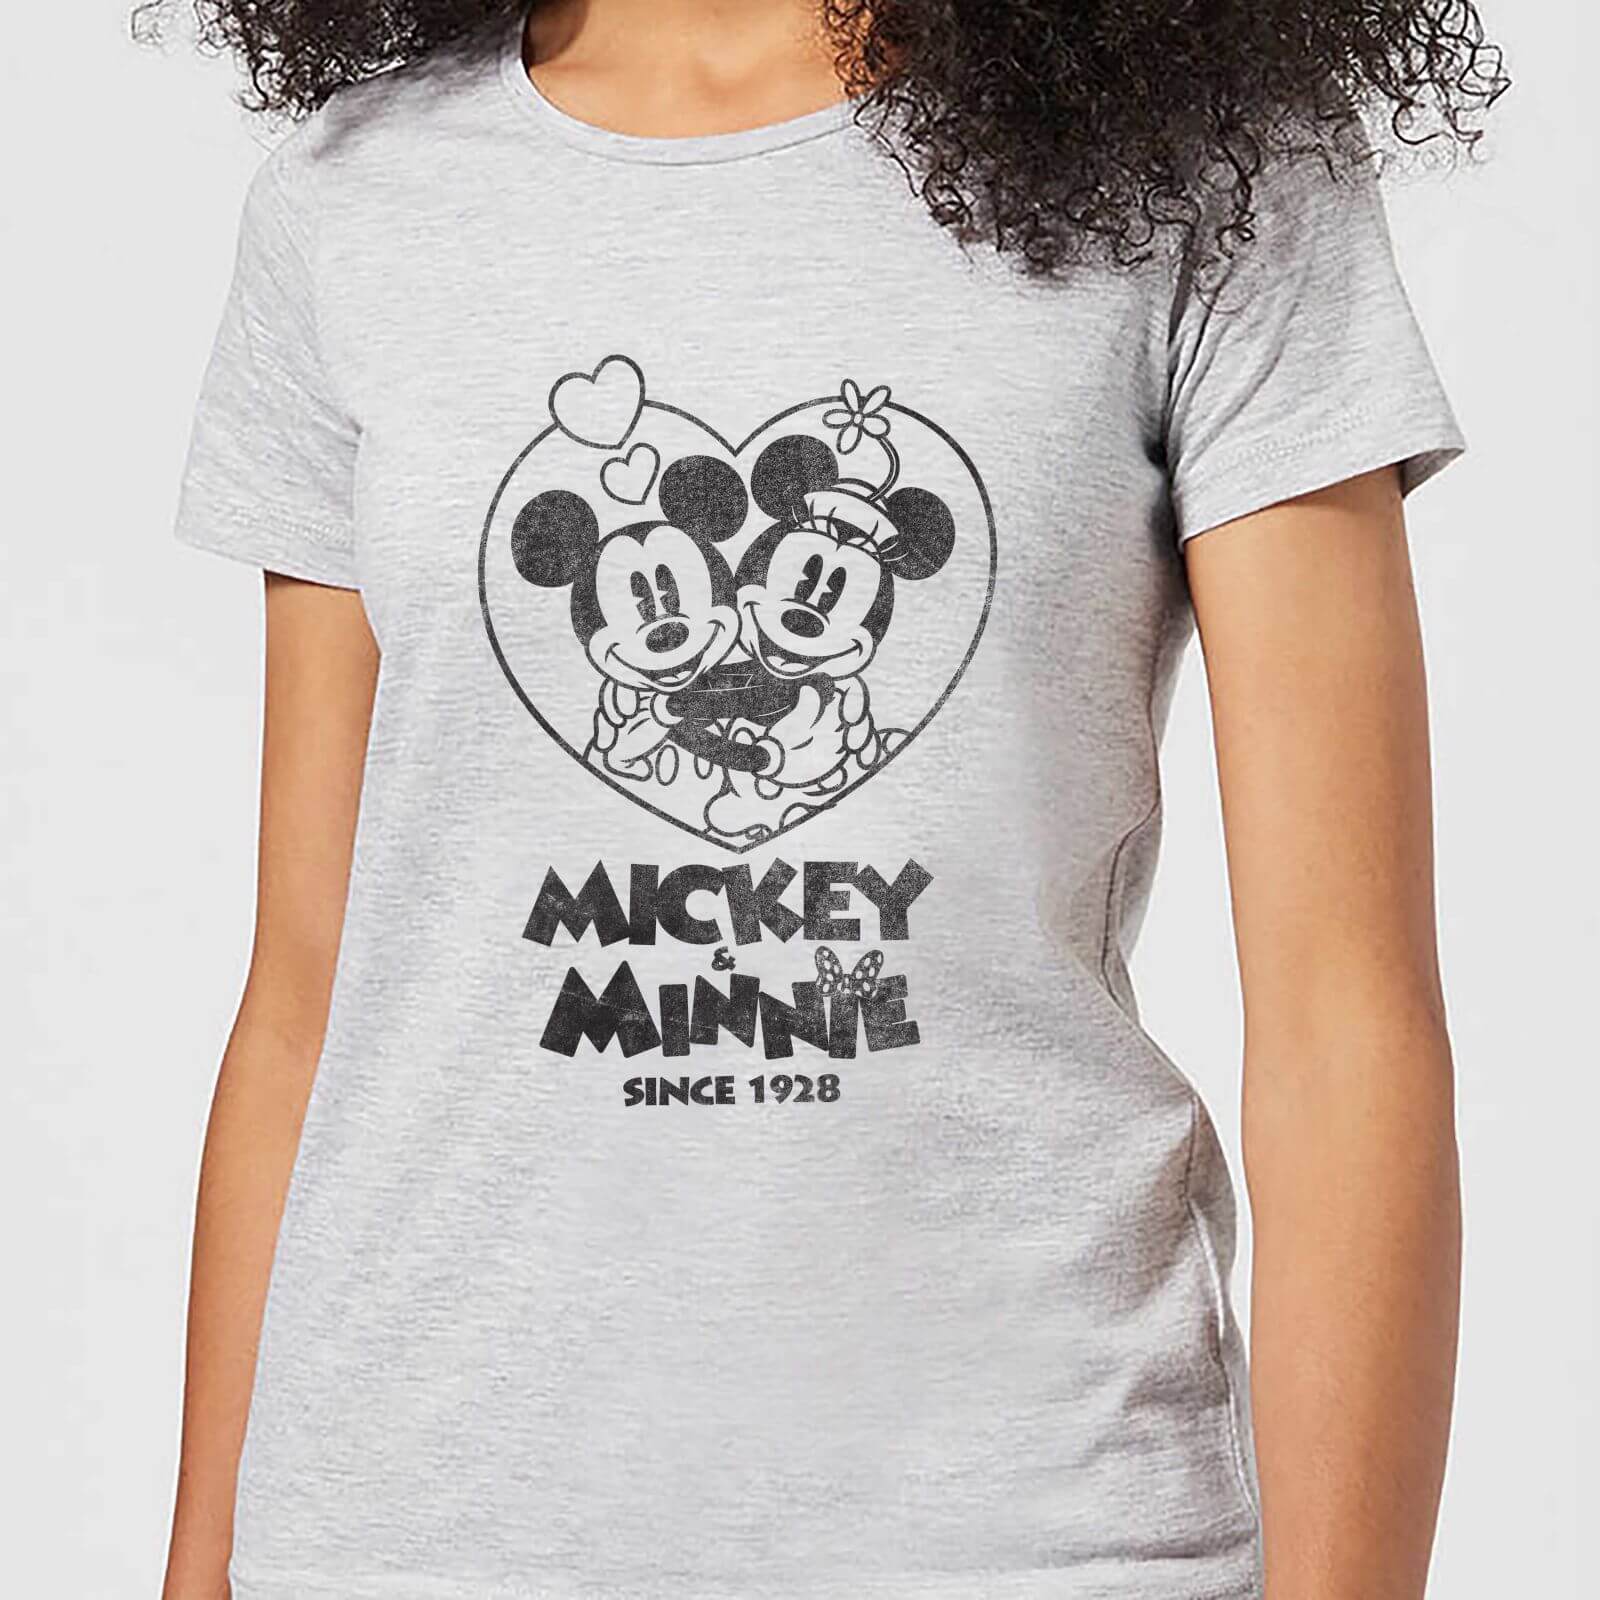 Disney Minnie Mickey Since 1928 Women's T-Shirt - Grey - XL